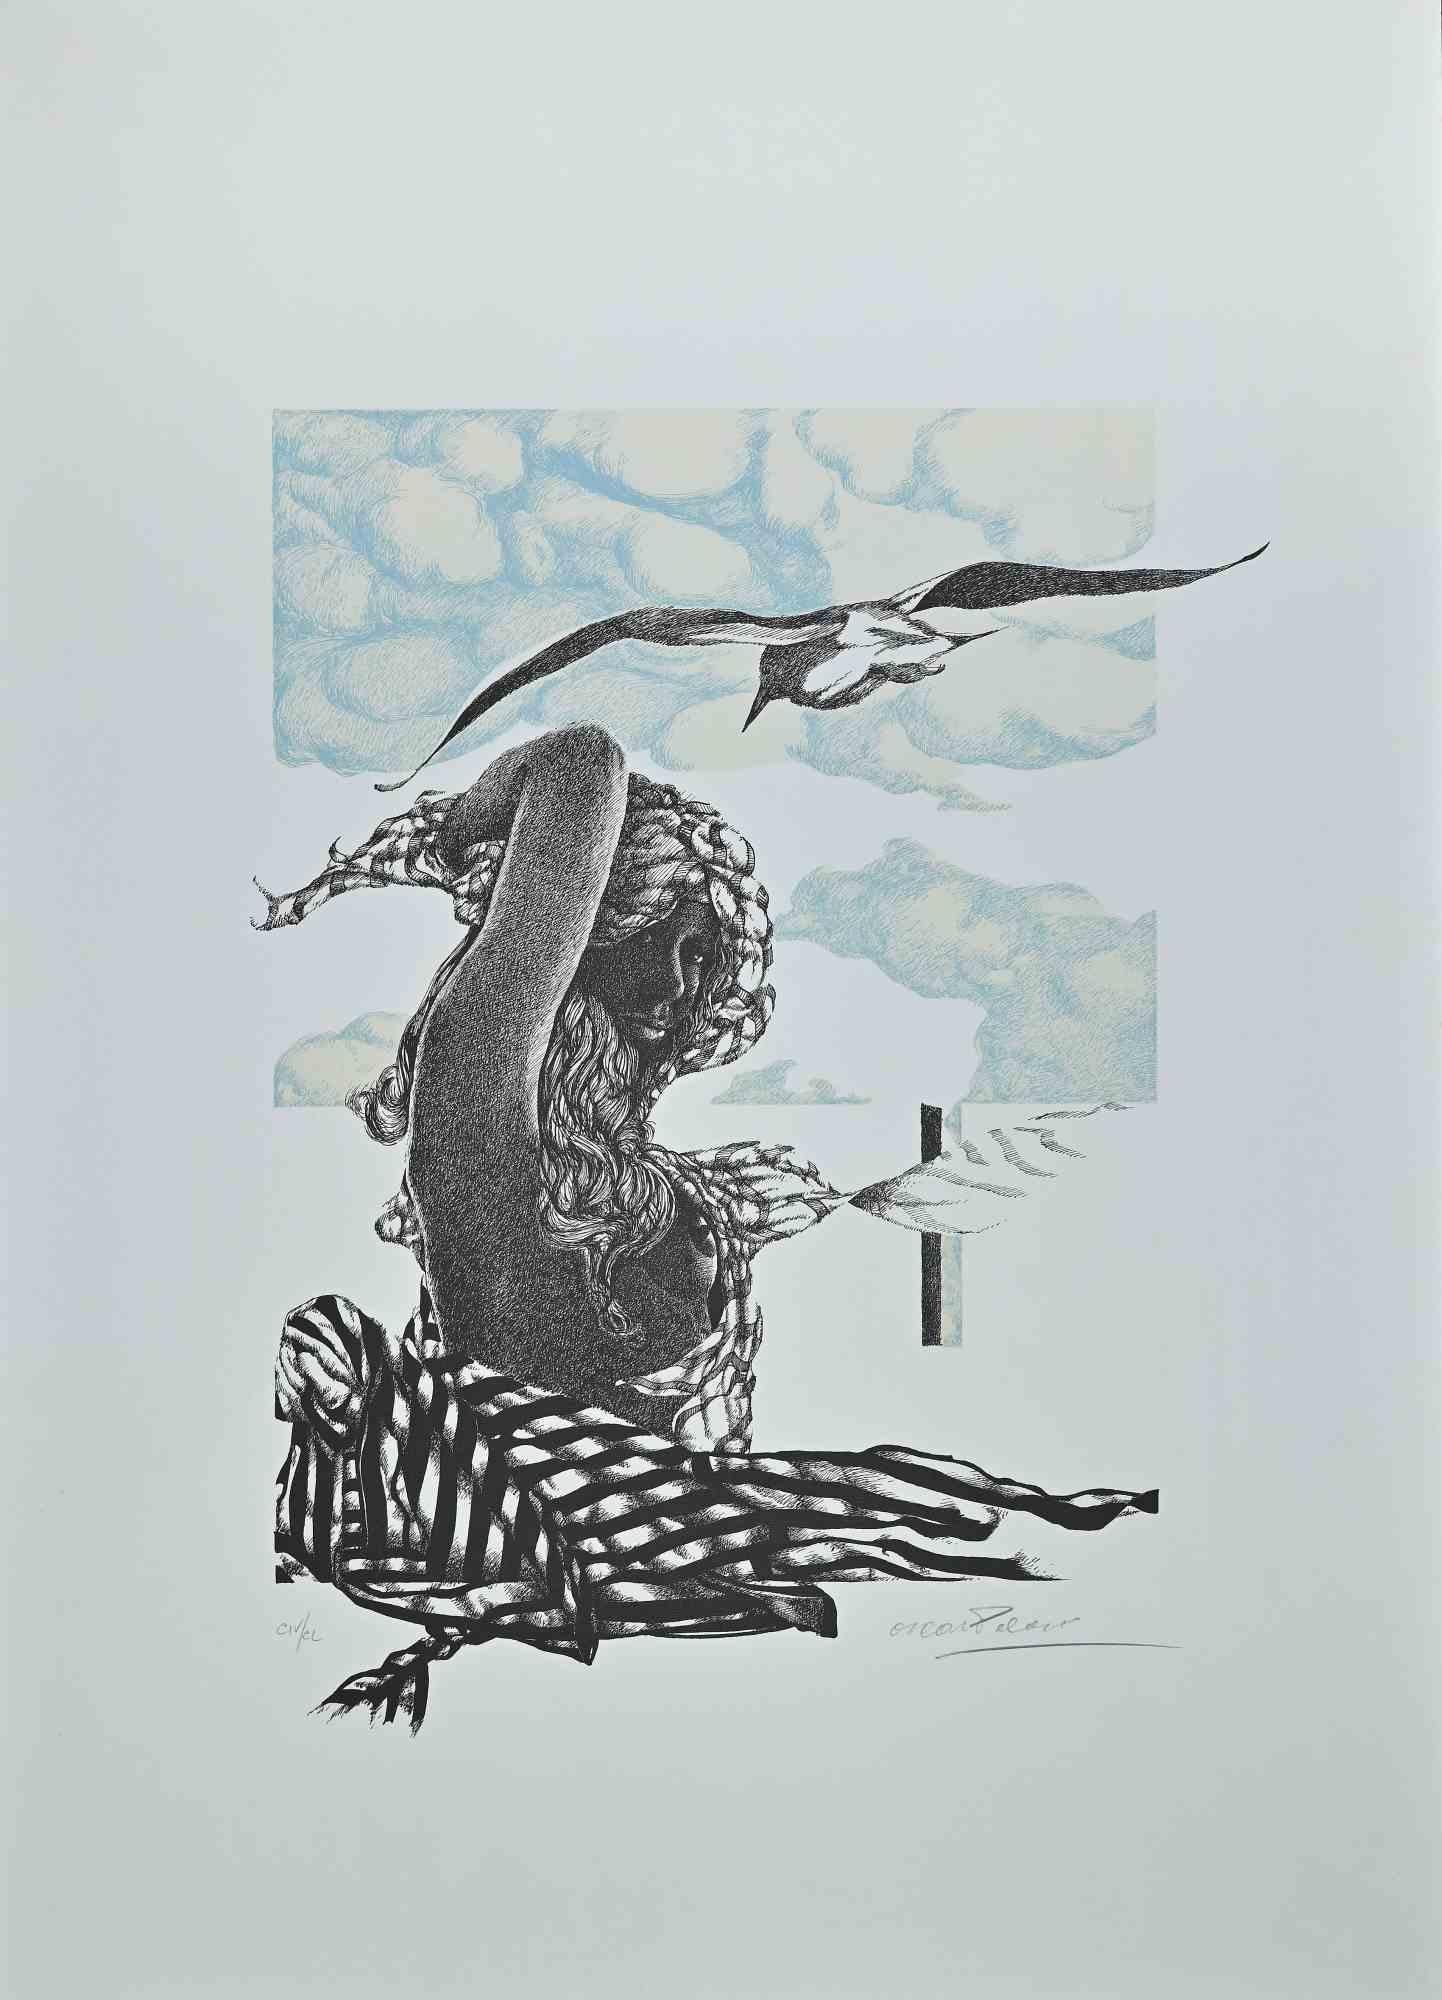 La femme à l'oiseau est un original en couleur  Lithographie réalisée par Oscar Pelosi dans les années 1980.

L'œuvre est signée à la main au crayon par l'artiste en bas à droite. Numéroté, en bas à gauche.

Bonnes conditions.

Avec l'étiquette du